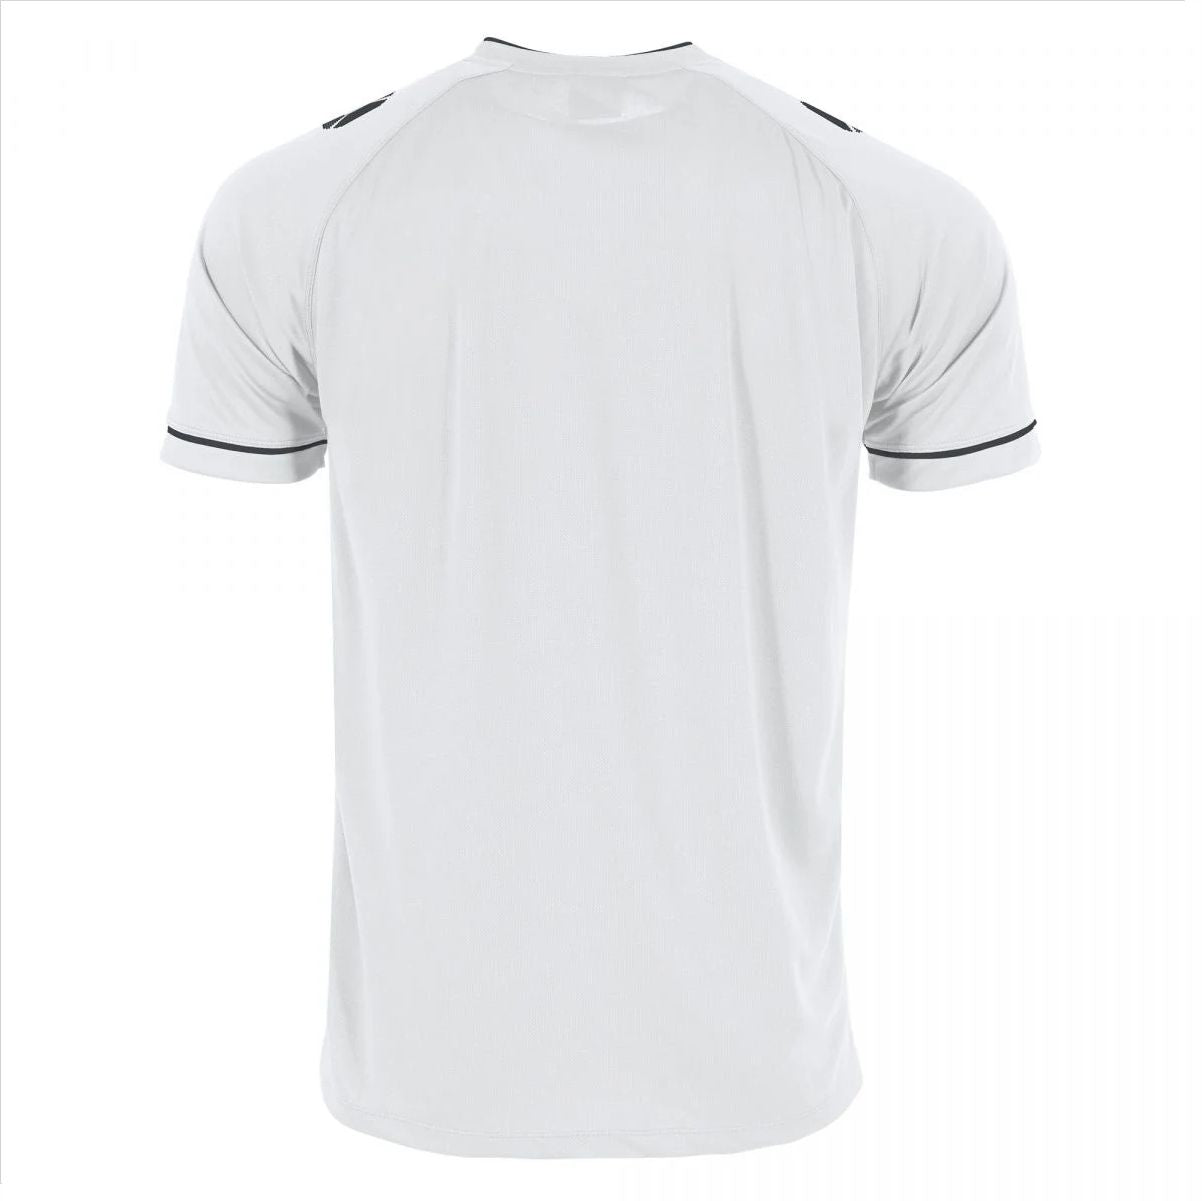 Stanno - Dash Shirt - White & Black